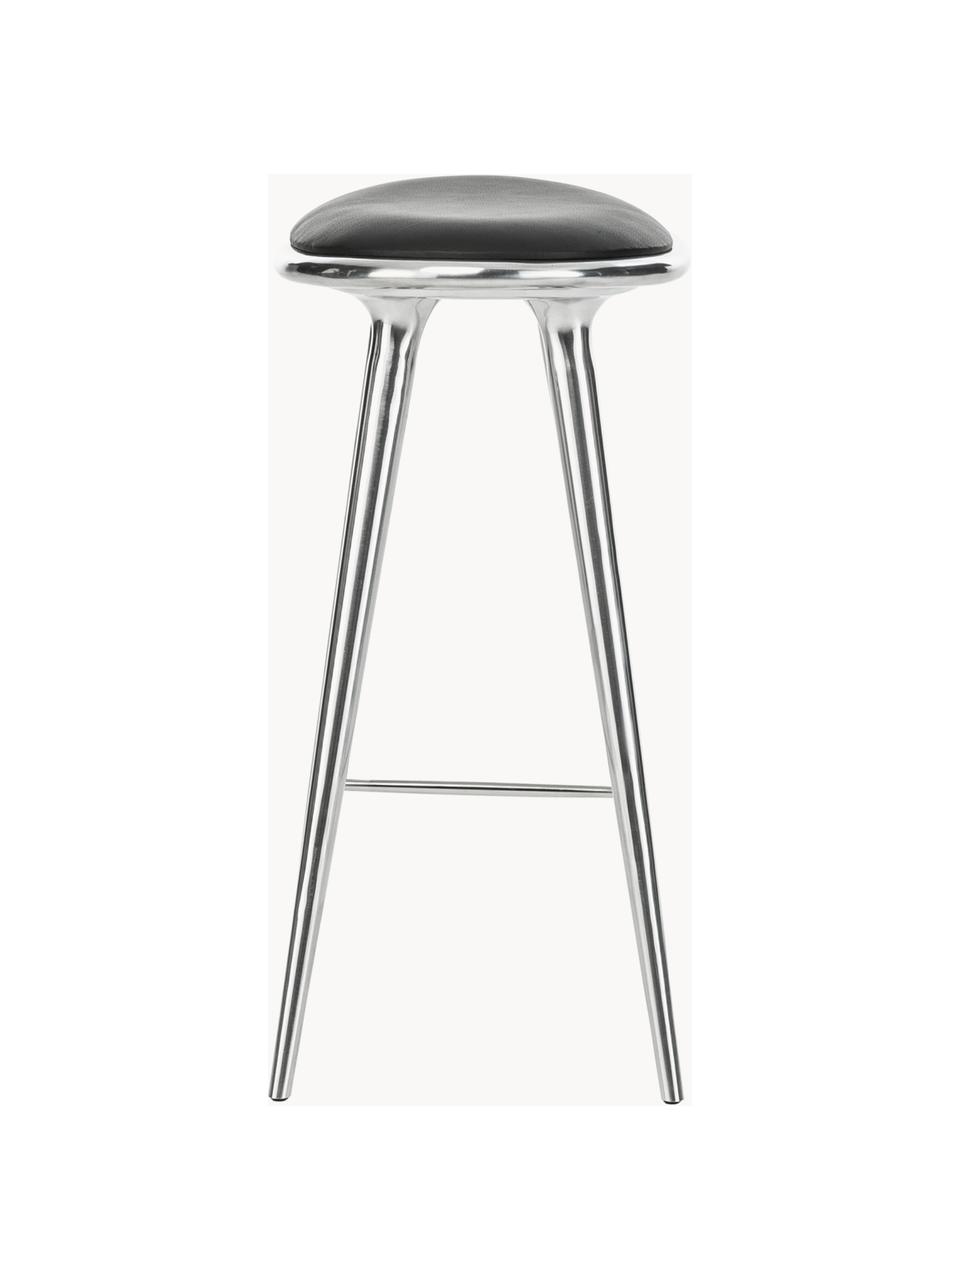 Barhocker High Stool aus Aluminium und Leder, Beine: Aluminium, beschichtet, Sitzfläche: Leder, Silberfarben, Leder Schwarz, B 45 x H 69 cm